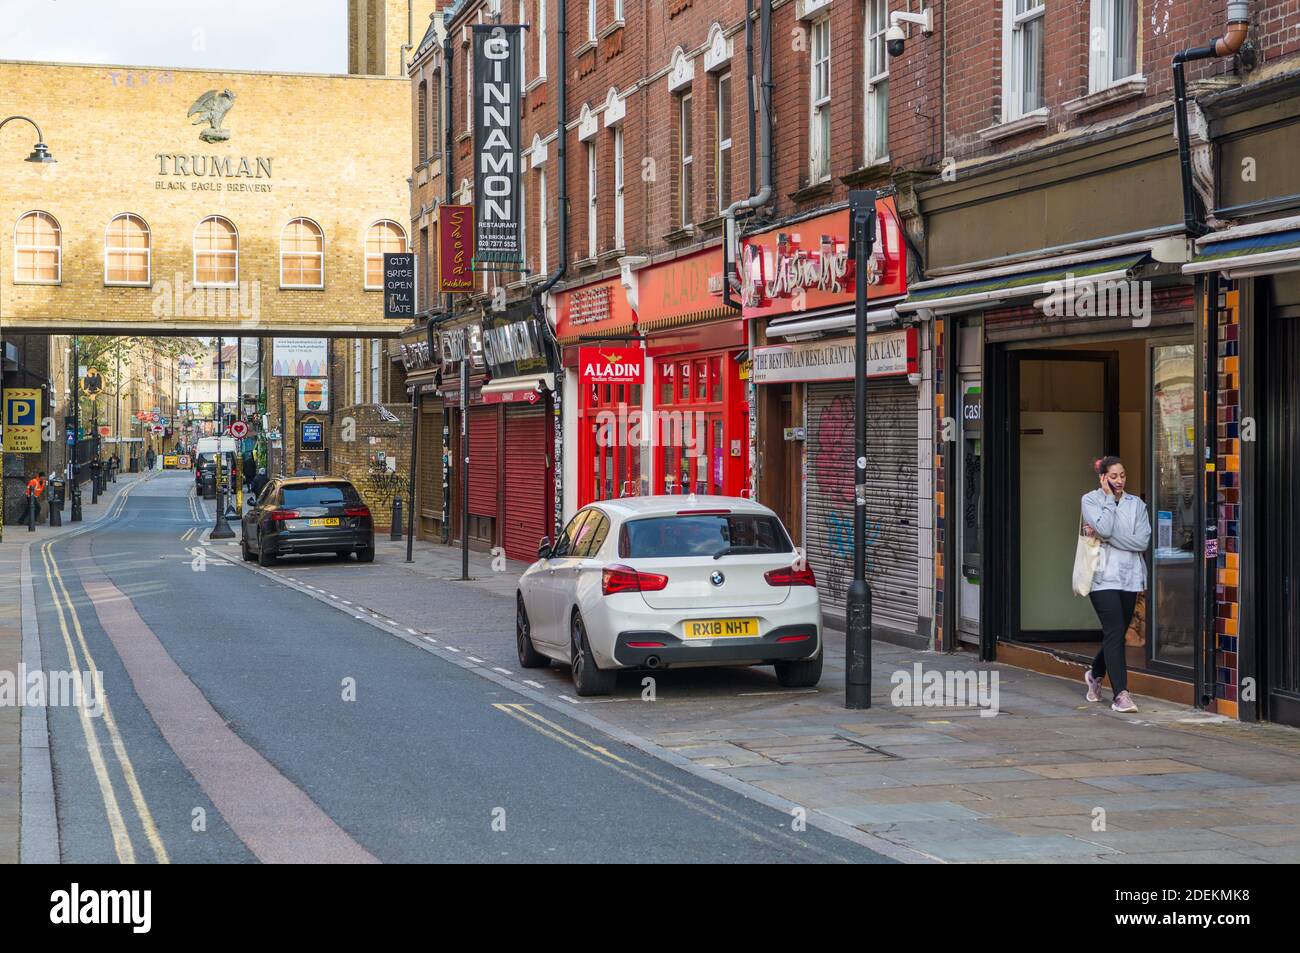 Vue le long de Brick Lane vers la brasserie Truman Black Eagle et les restaurants indiens et les maisons de curry, Spitalfields, Londres, Angleterre, Royaume-Uni Banque D'Images